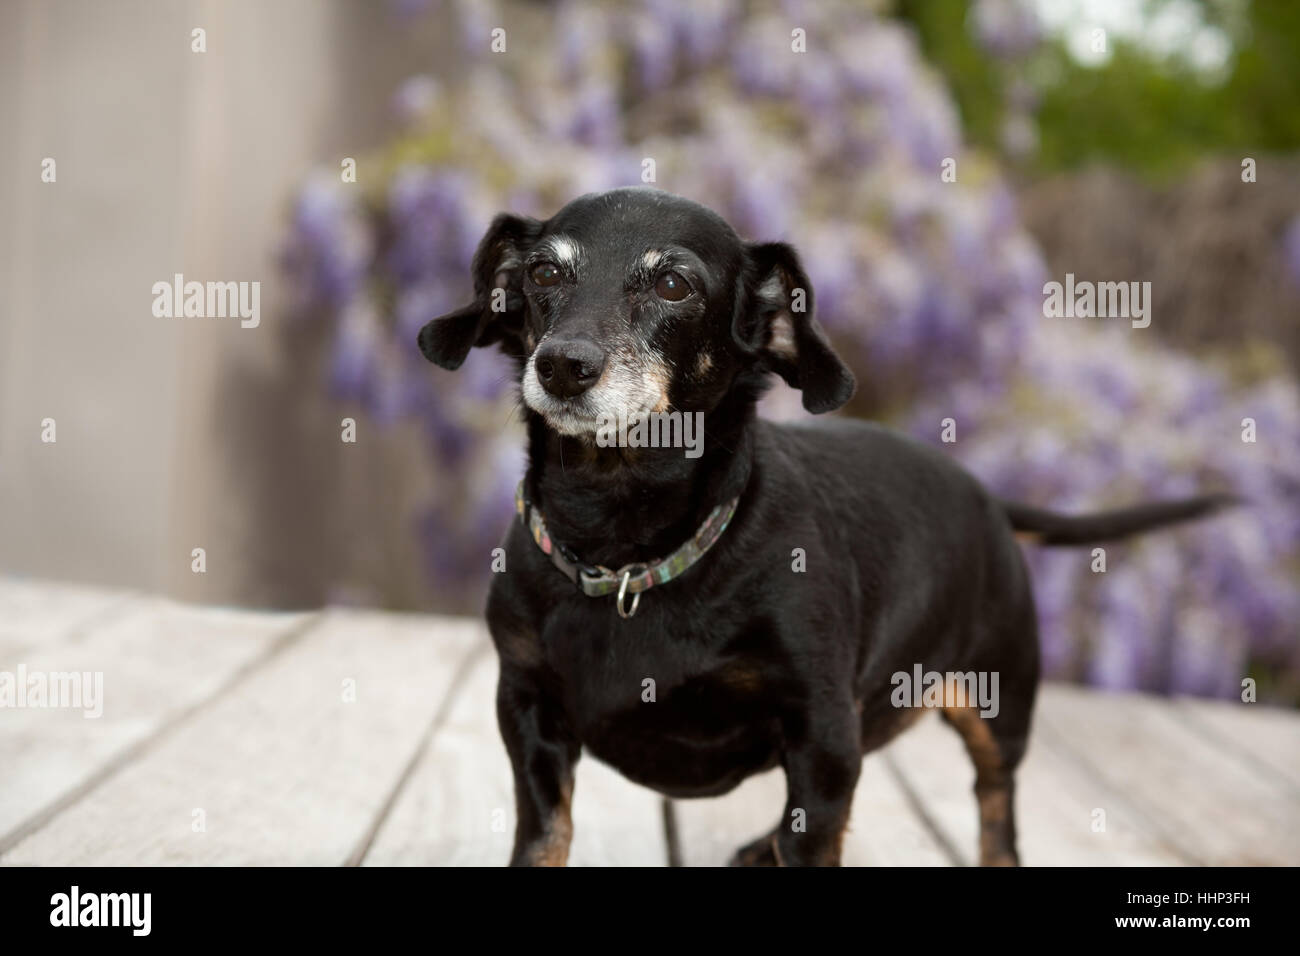 Pequeño cuerpo completo mini senior teckel wiener perro se levanta sobre una plataforma de madera con lavanda wisteria vides borrosa en el fondo. Foto de stock